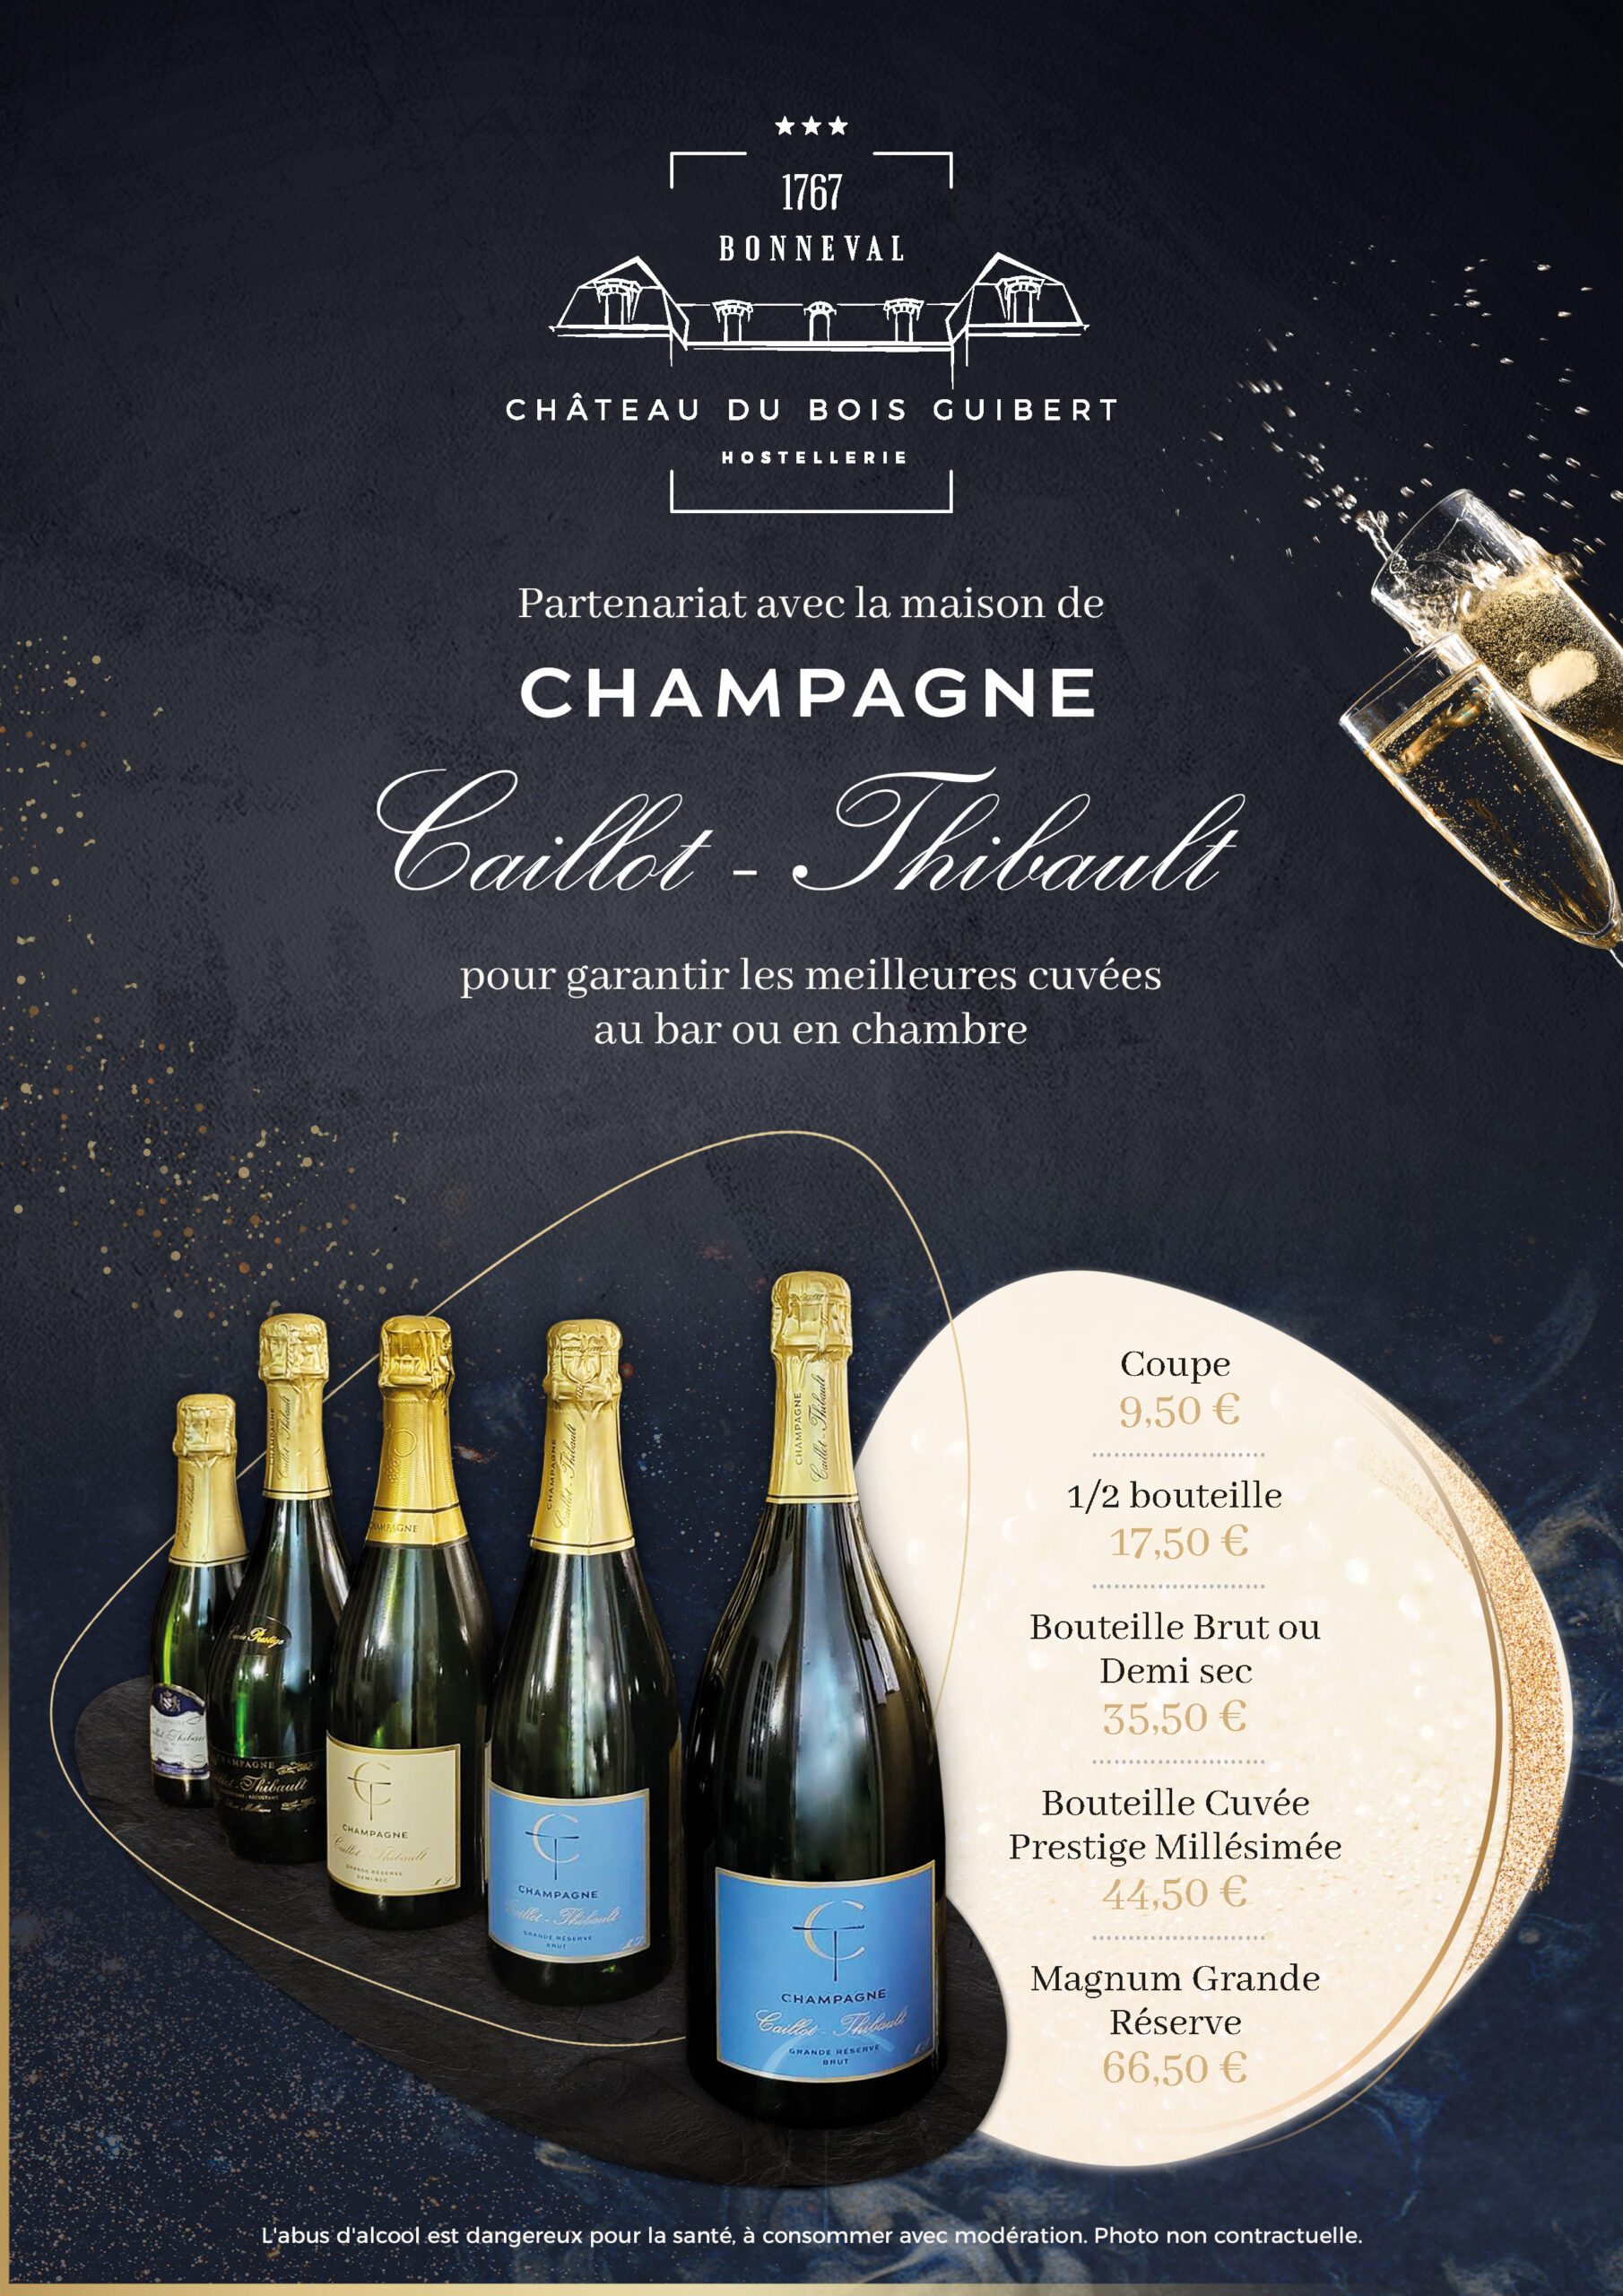 Champagne Caillot Thibault en partenariat avec l'Hostellerie du Château du Bois Guibert pour garantir les meilleures cuvées au bar ou en chambre